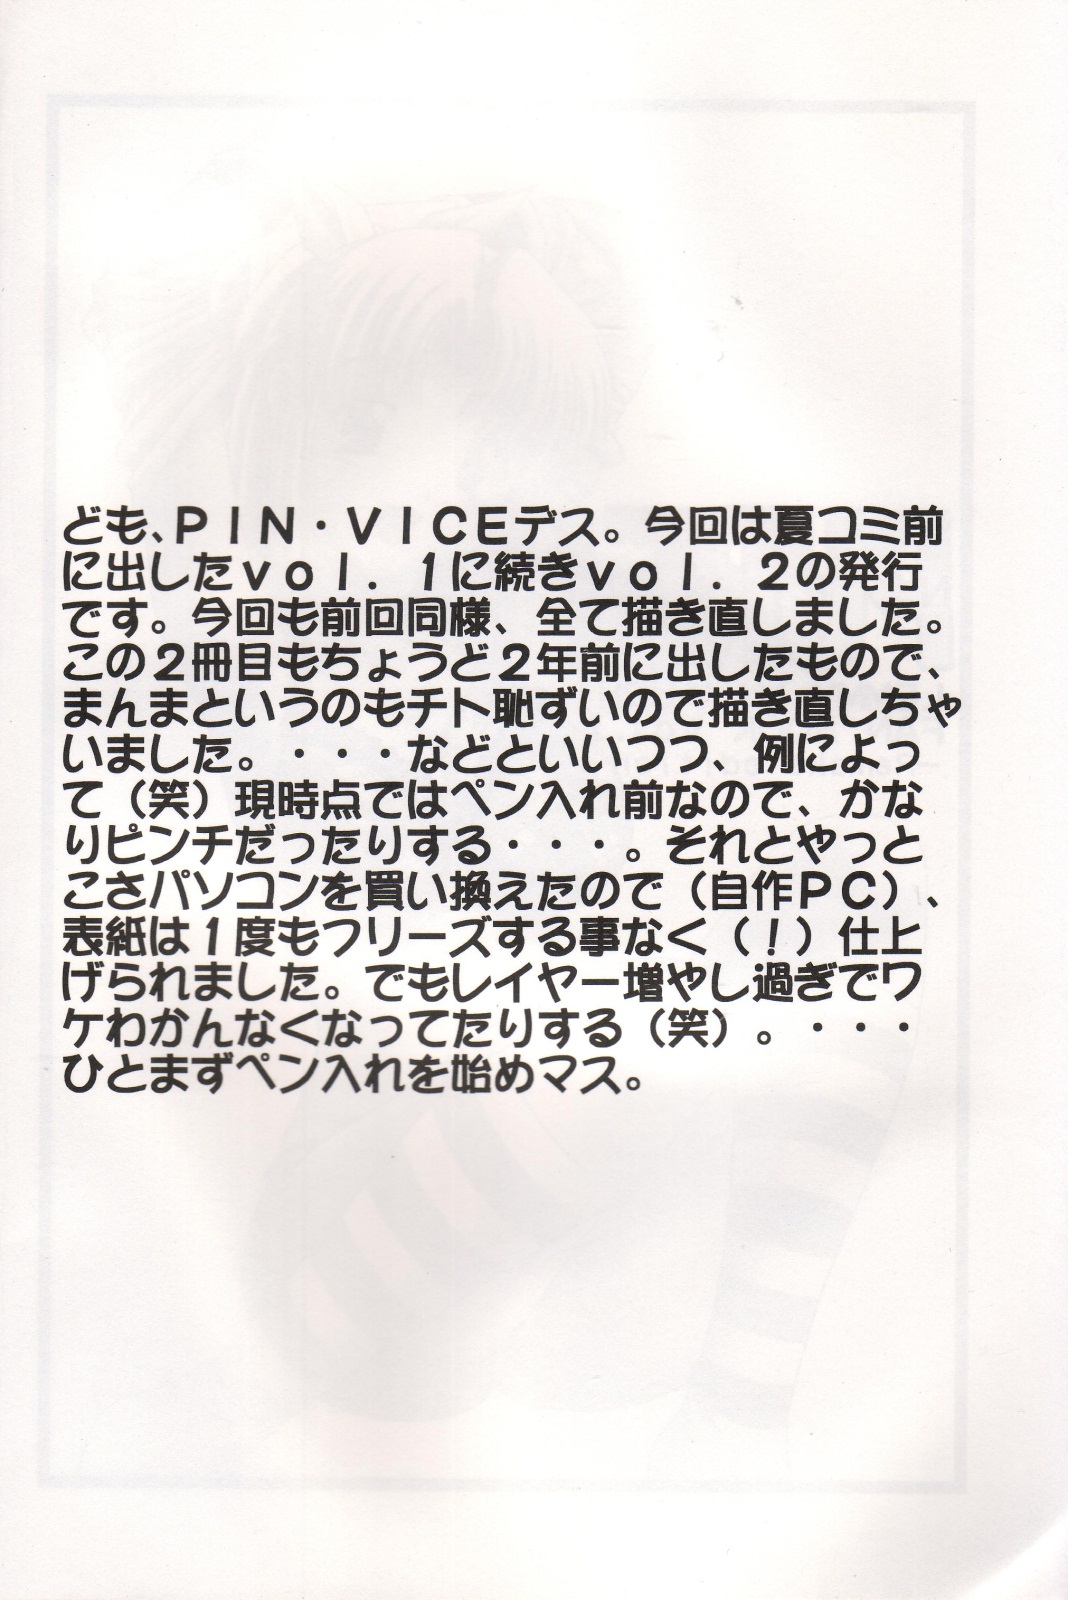 (C61) [下僕出版 (PIN・VICE)] Pure! Next Lemmy Miyauchi Fan Book vol.2 (トゥハート)